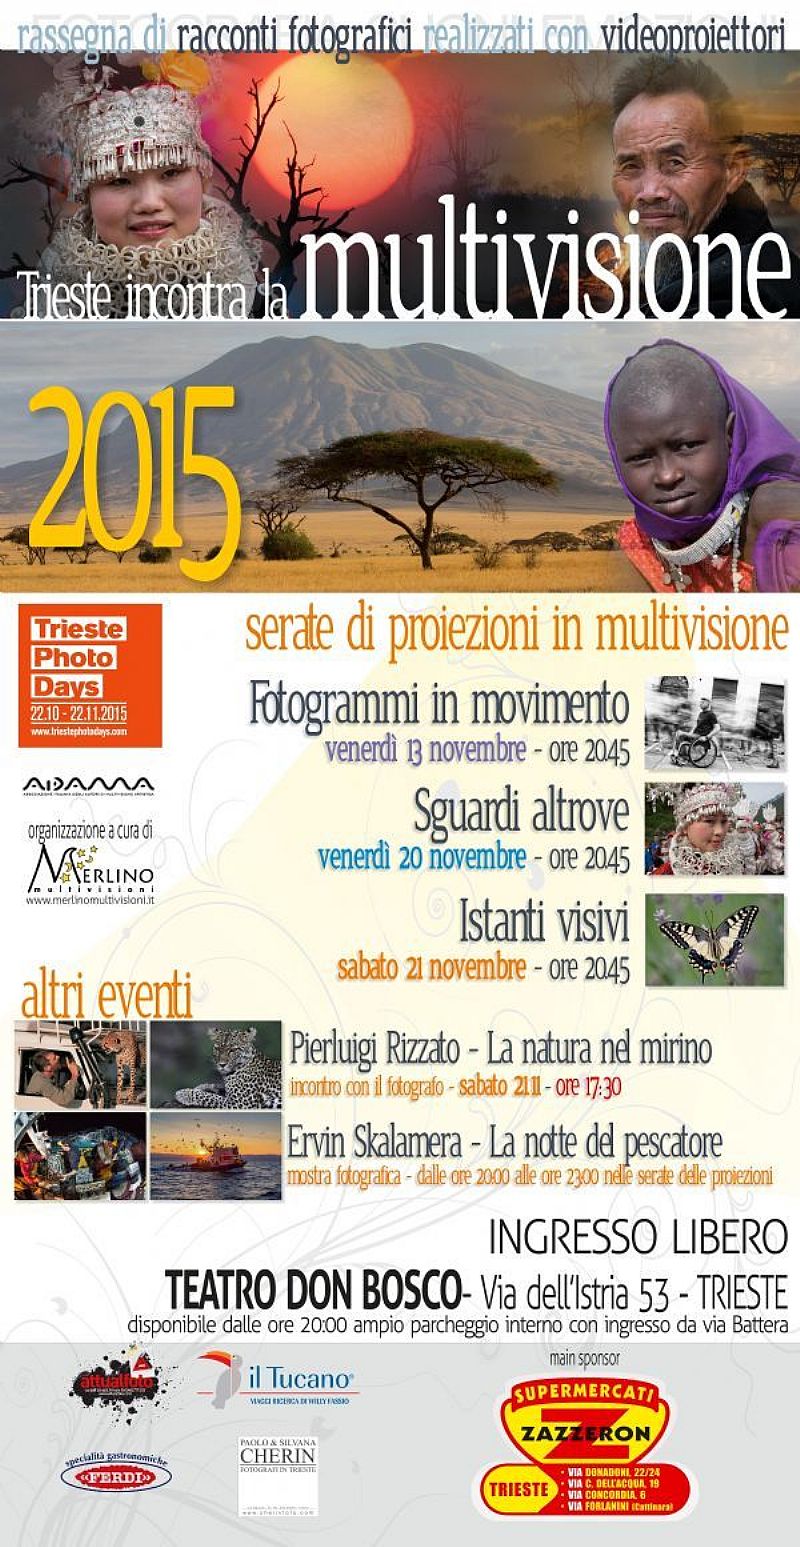 Trieste incontra la multivisione 2015